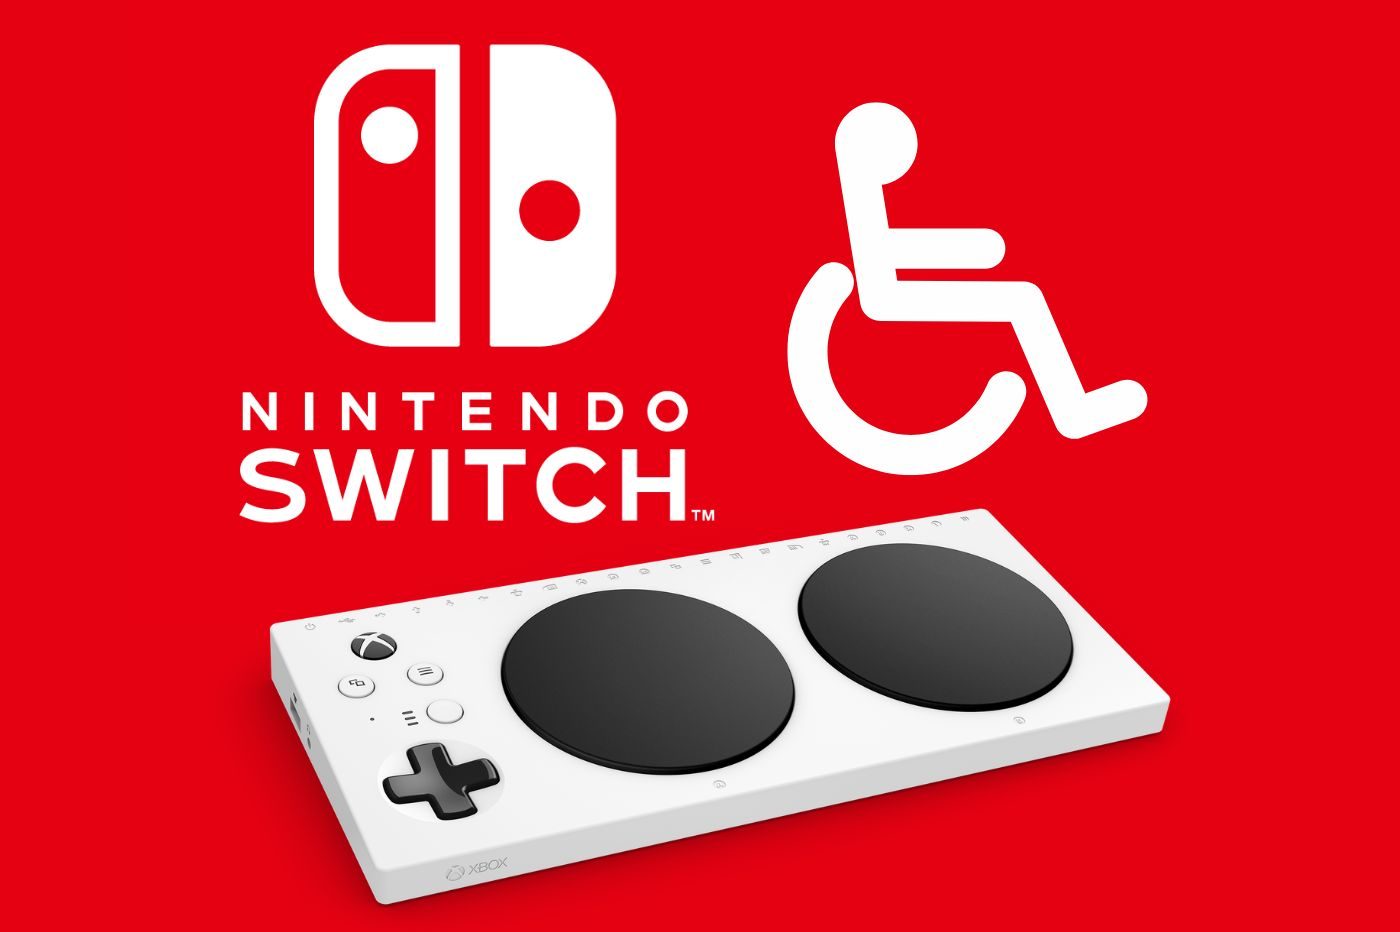 Logo Nintendo Switch, logo personne en situation de handicap et manette Xbox adaptative.